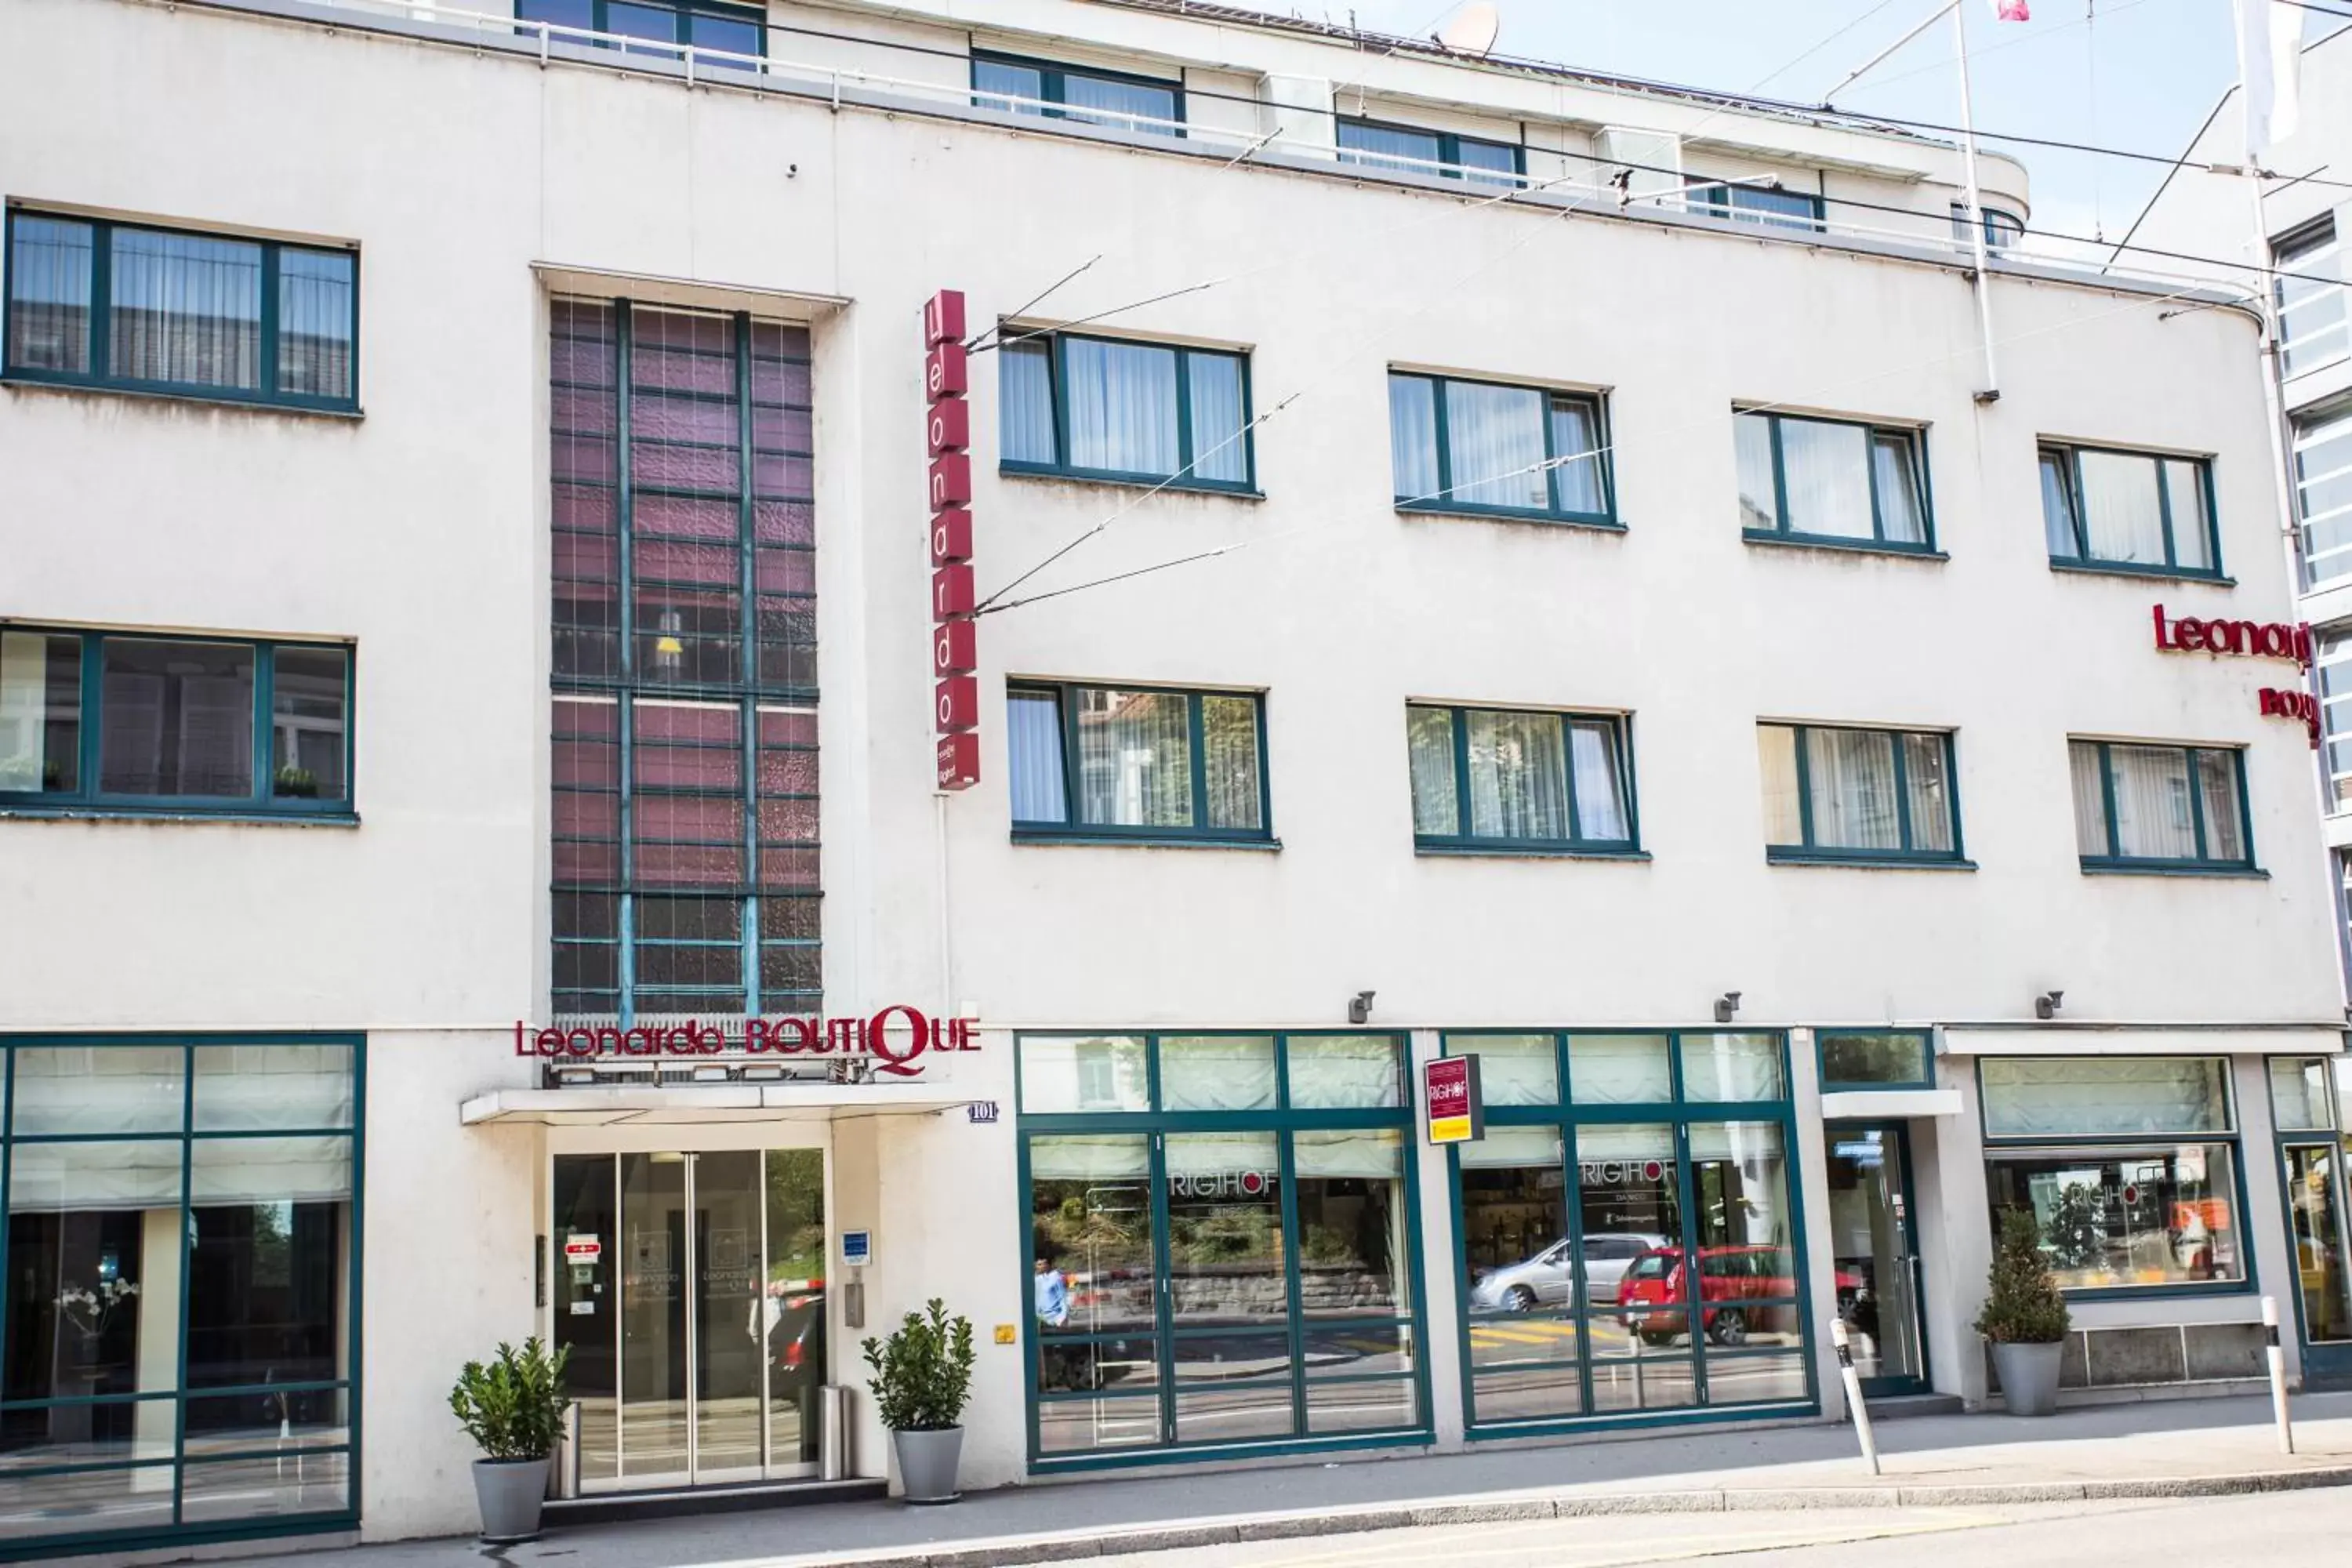 Facade/entrance, Property Building in Leonardo Boutique Hotel Rigihof Zurich